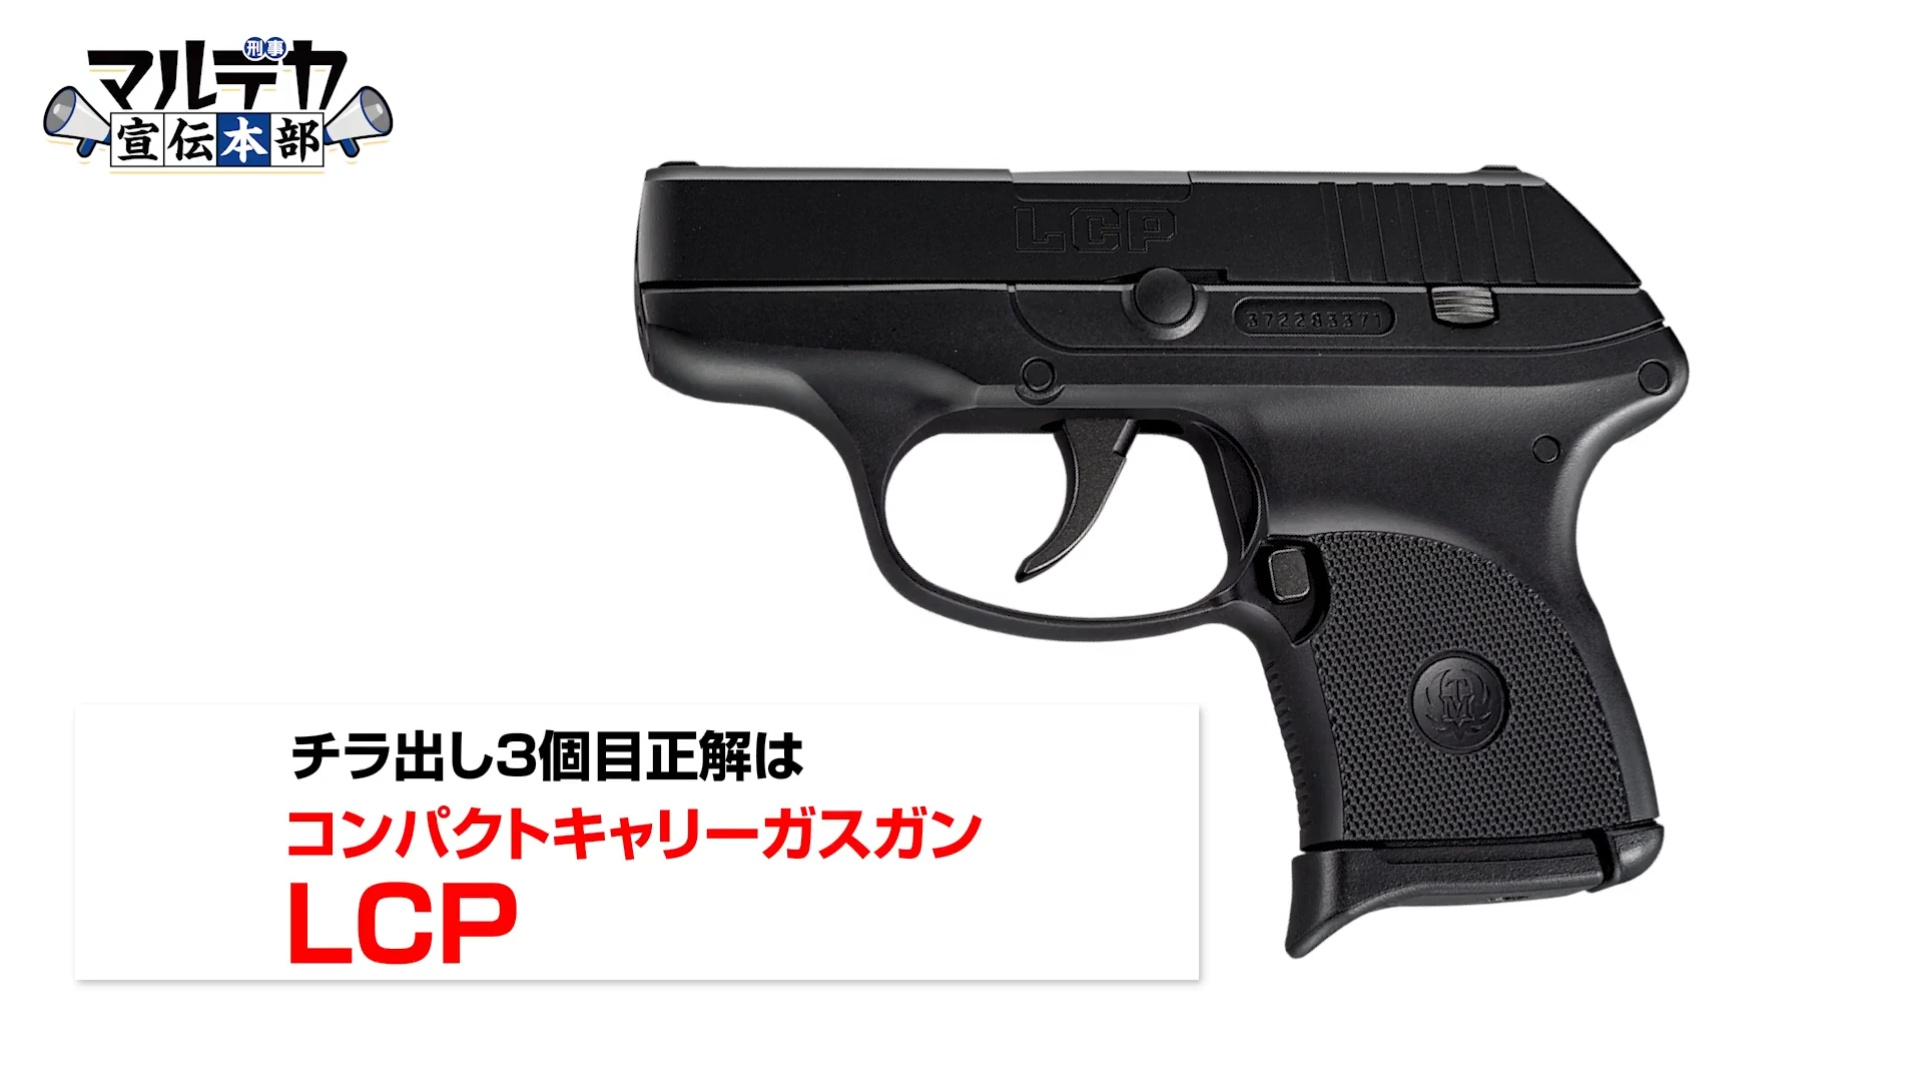 東京マルイ、新製品のガスガン3種を発表。ブローバックしない固定スライド式の小型銃「LCP」、「ボディガード.380」など - HOBBY Watch